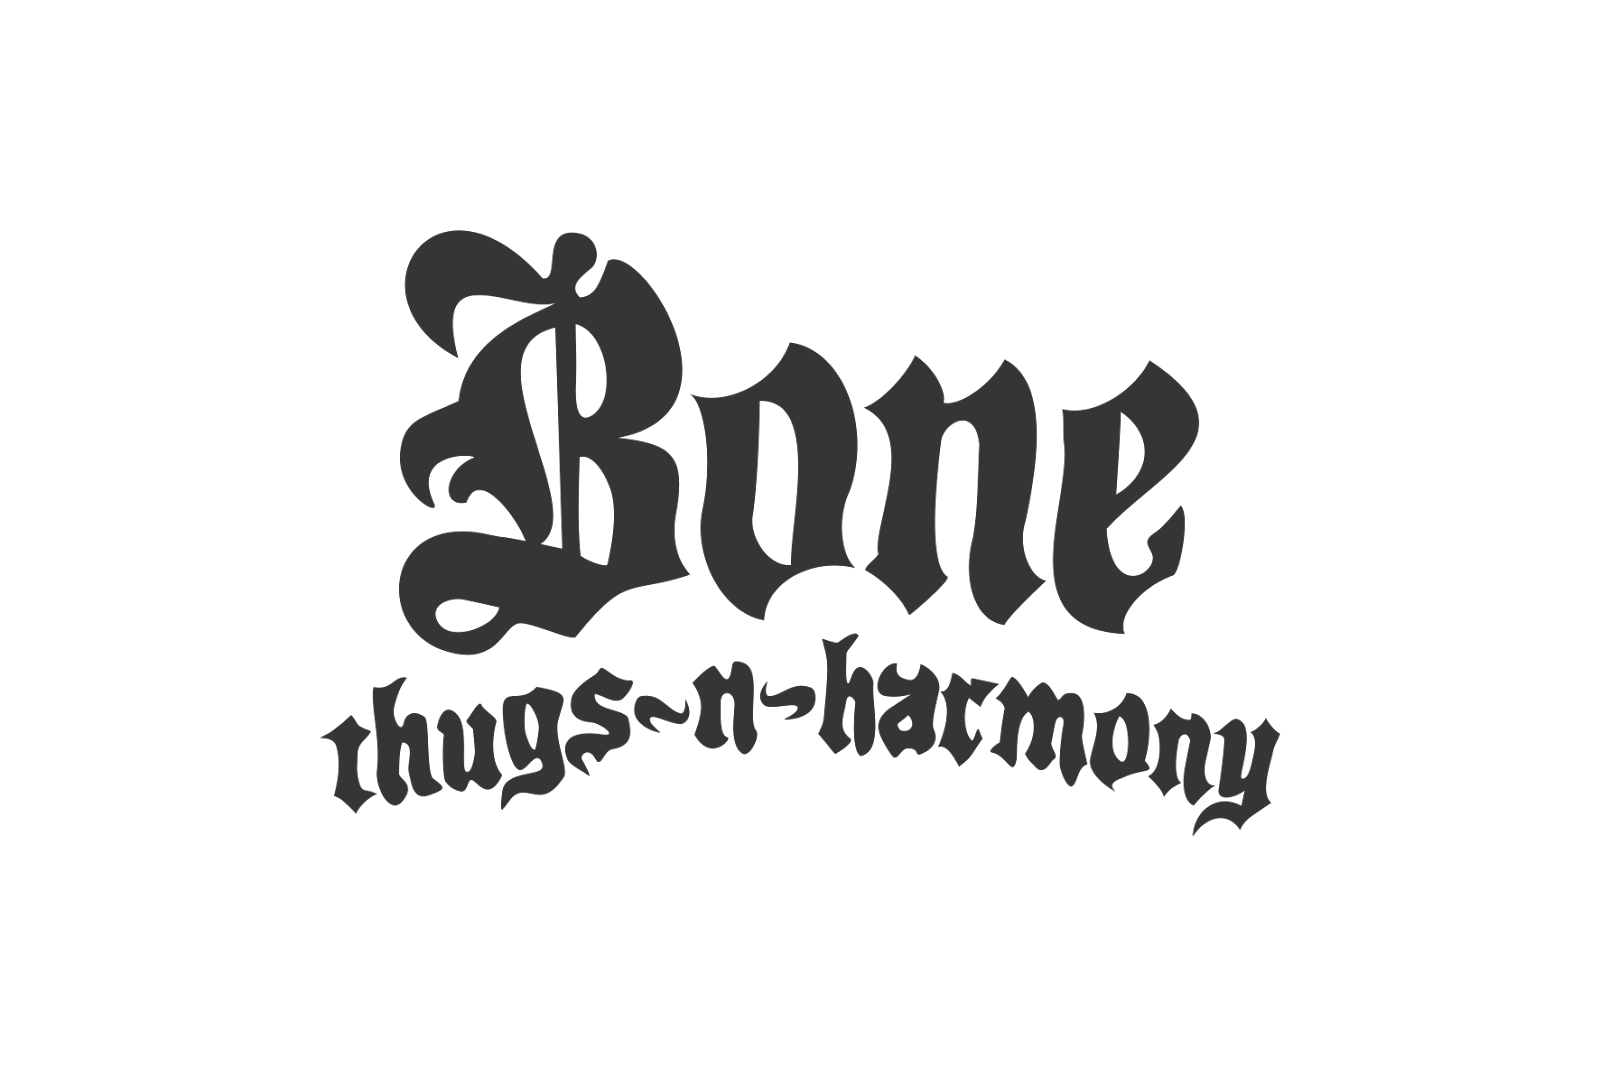 Bone thugs harmony. Bone Thugs-n-Harmony. Bone Thugs n Harmony logo. Bone Thugs -n - Harmony Rapper. Bones лого.